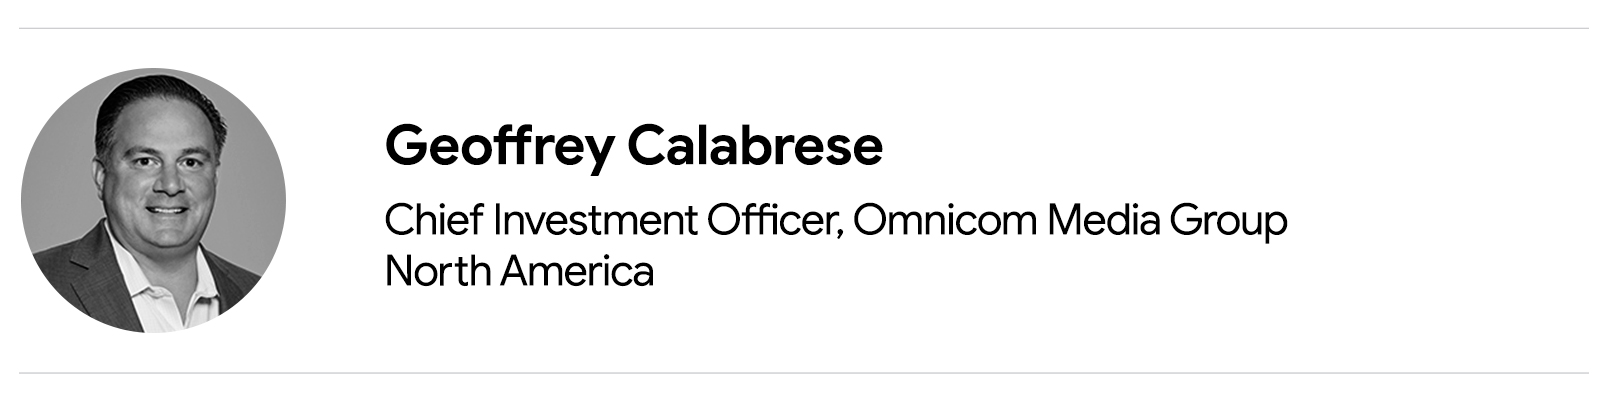 Una fotografía en blanco y negro de Geoffrey Calabrese, director de inversiones de Omnicom Media Group North America, un hombre blanco con el pelo corto y oscuro, que viste una chaqueta oscura y una camisa blanca con cuello.